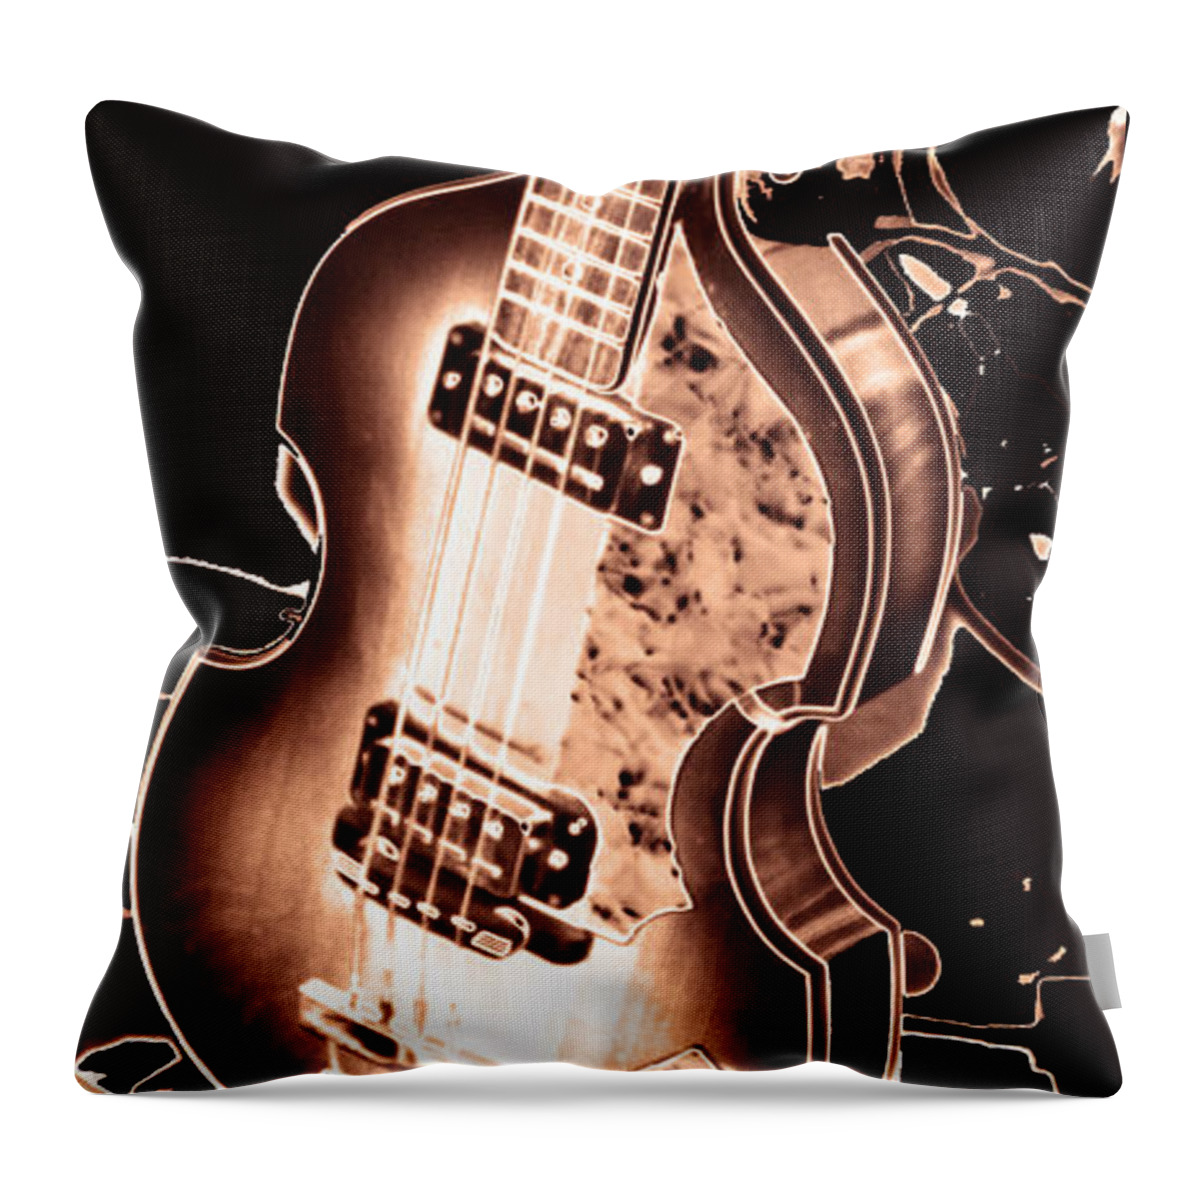 Bass Guitar Throw Pillow featuring the photograph Next one up by John Stuart Webbstock